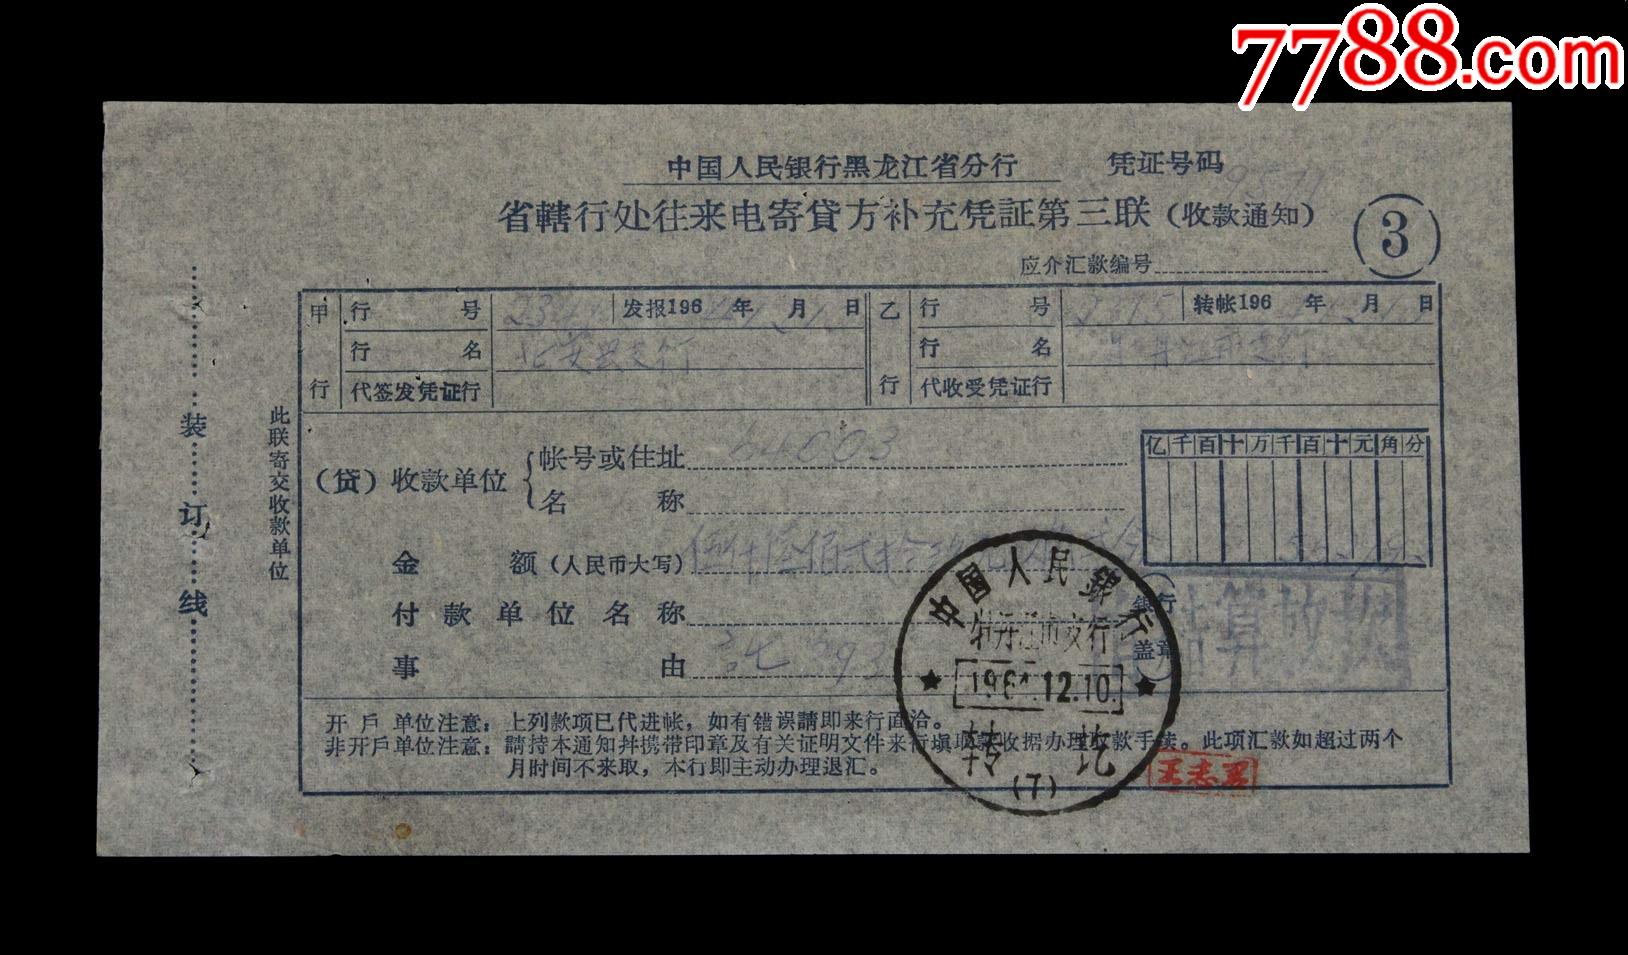 1964年:中国人民银行牡丹江市支行【银行单据】一张